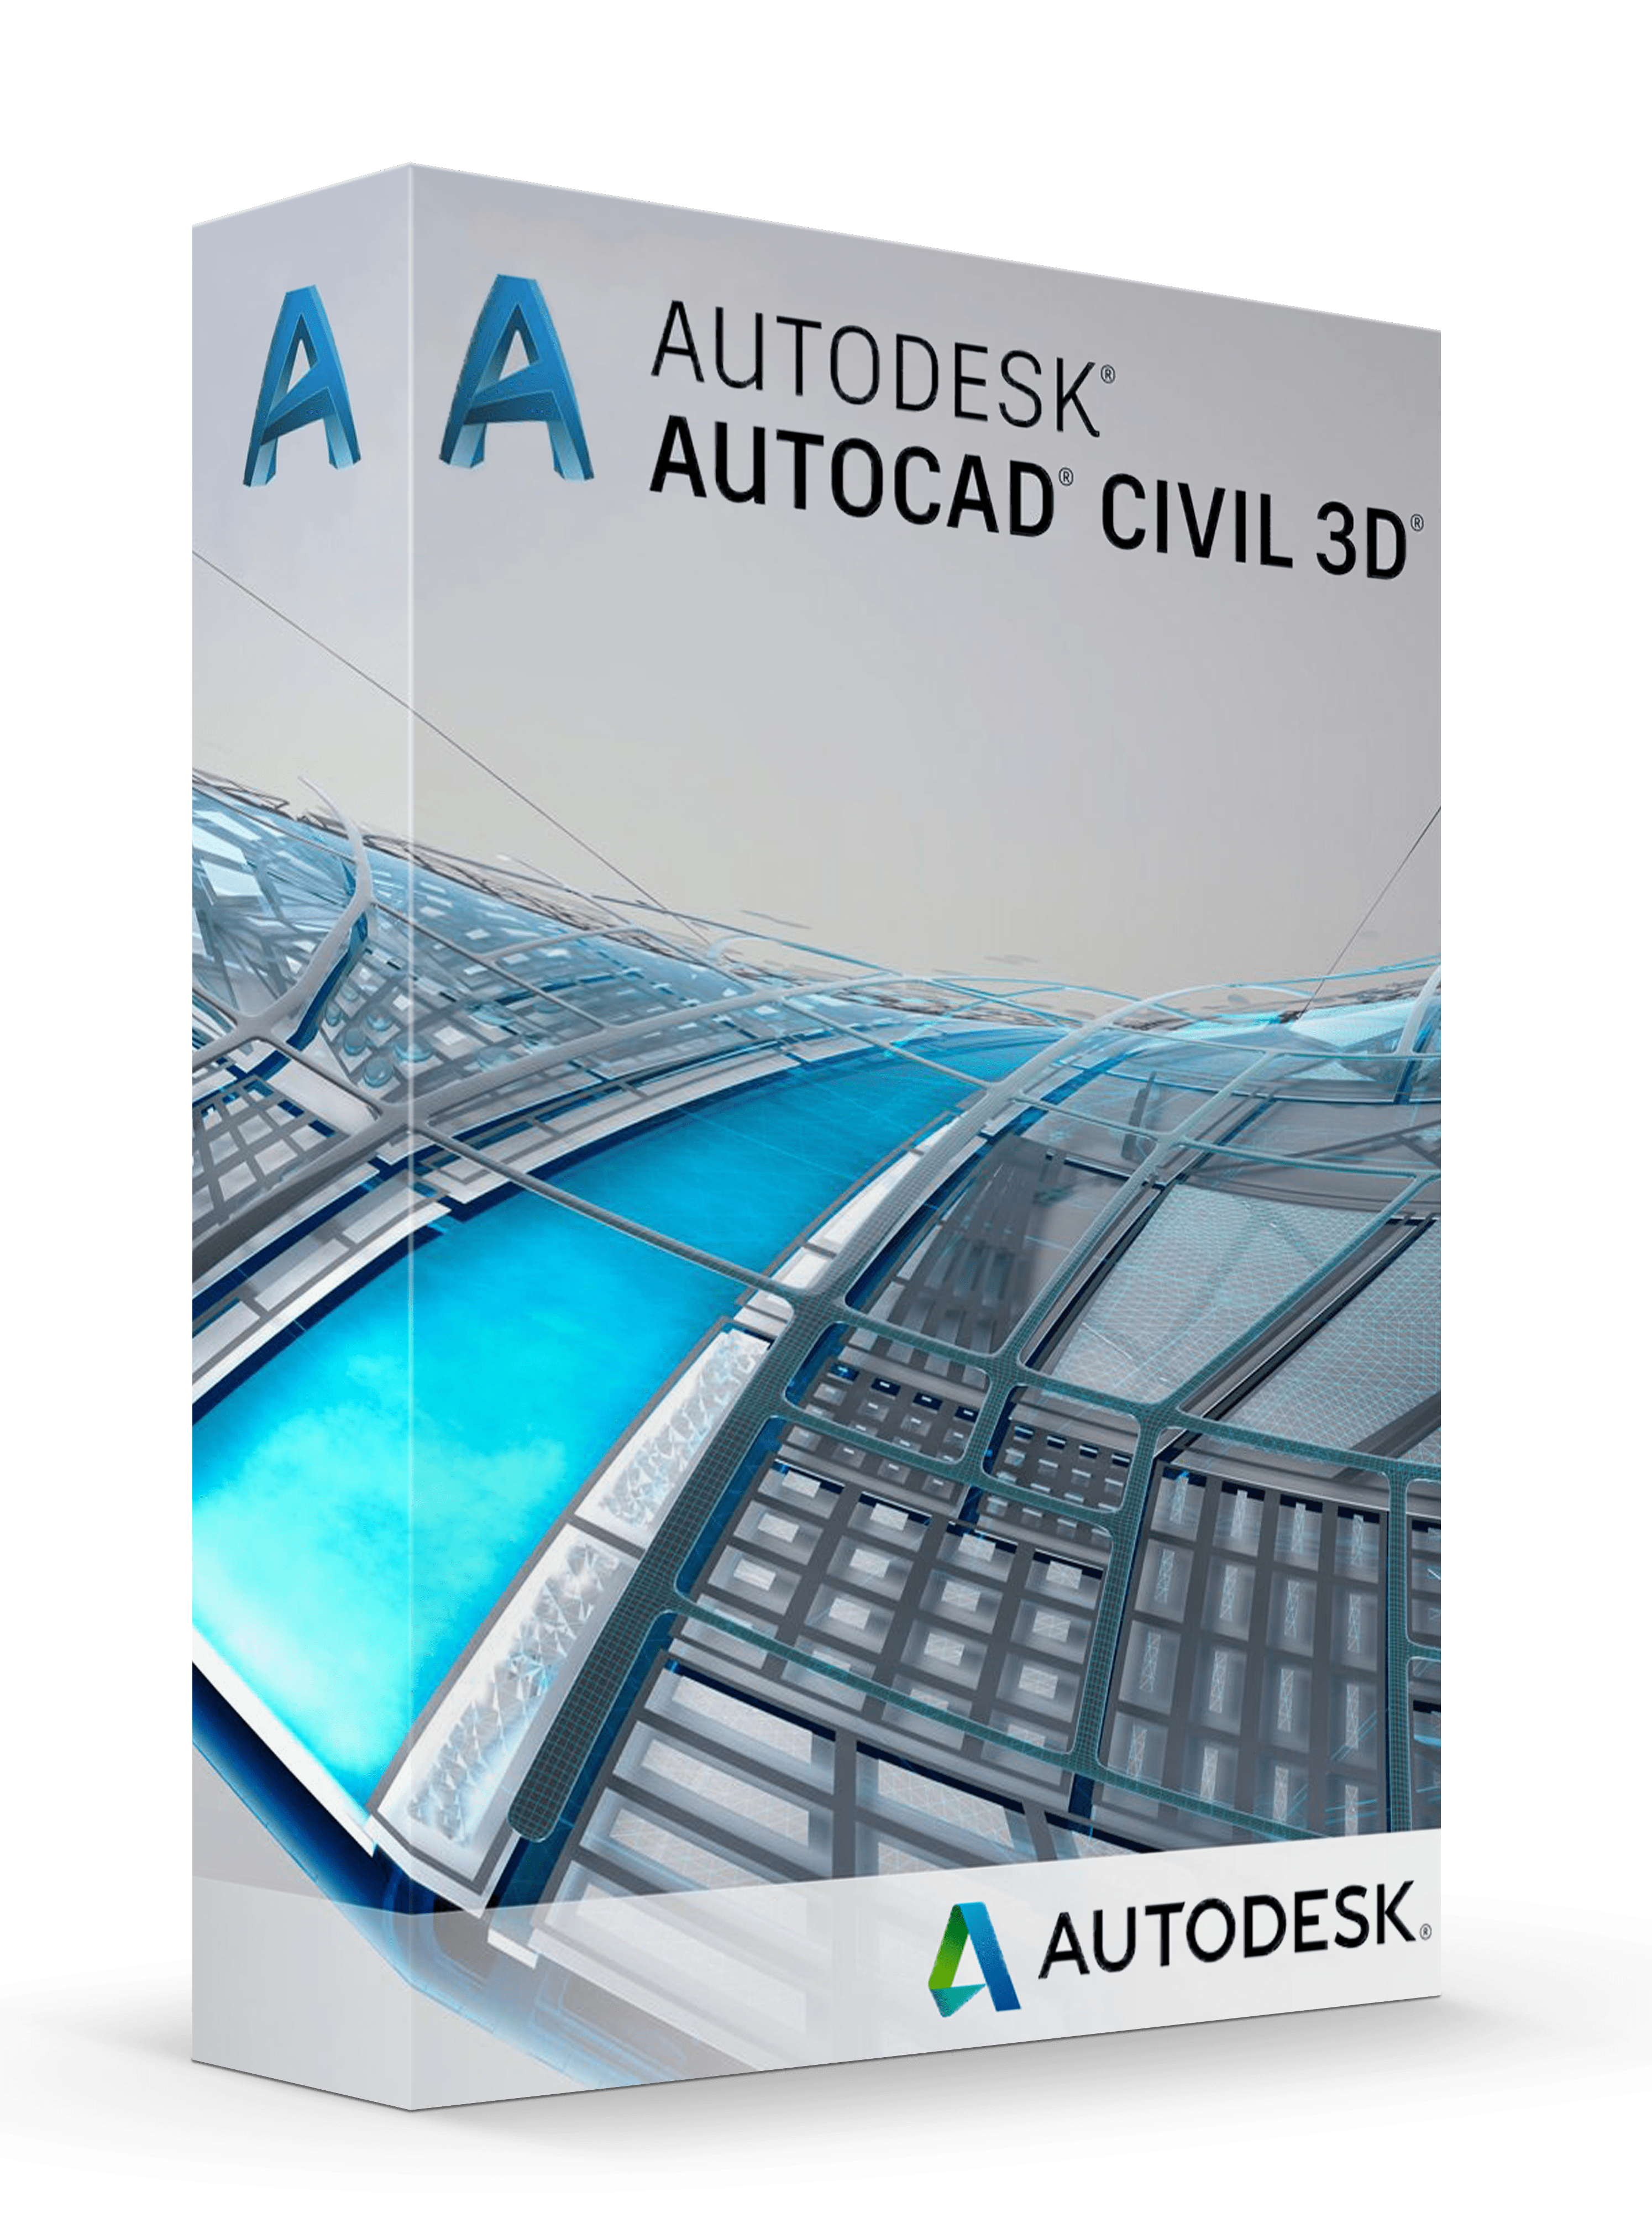 autodesk civil 3d requirements